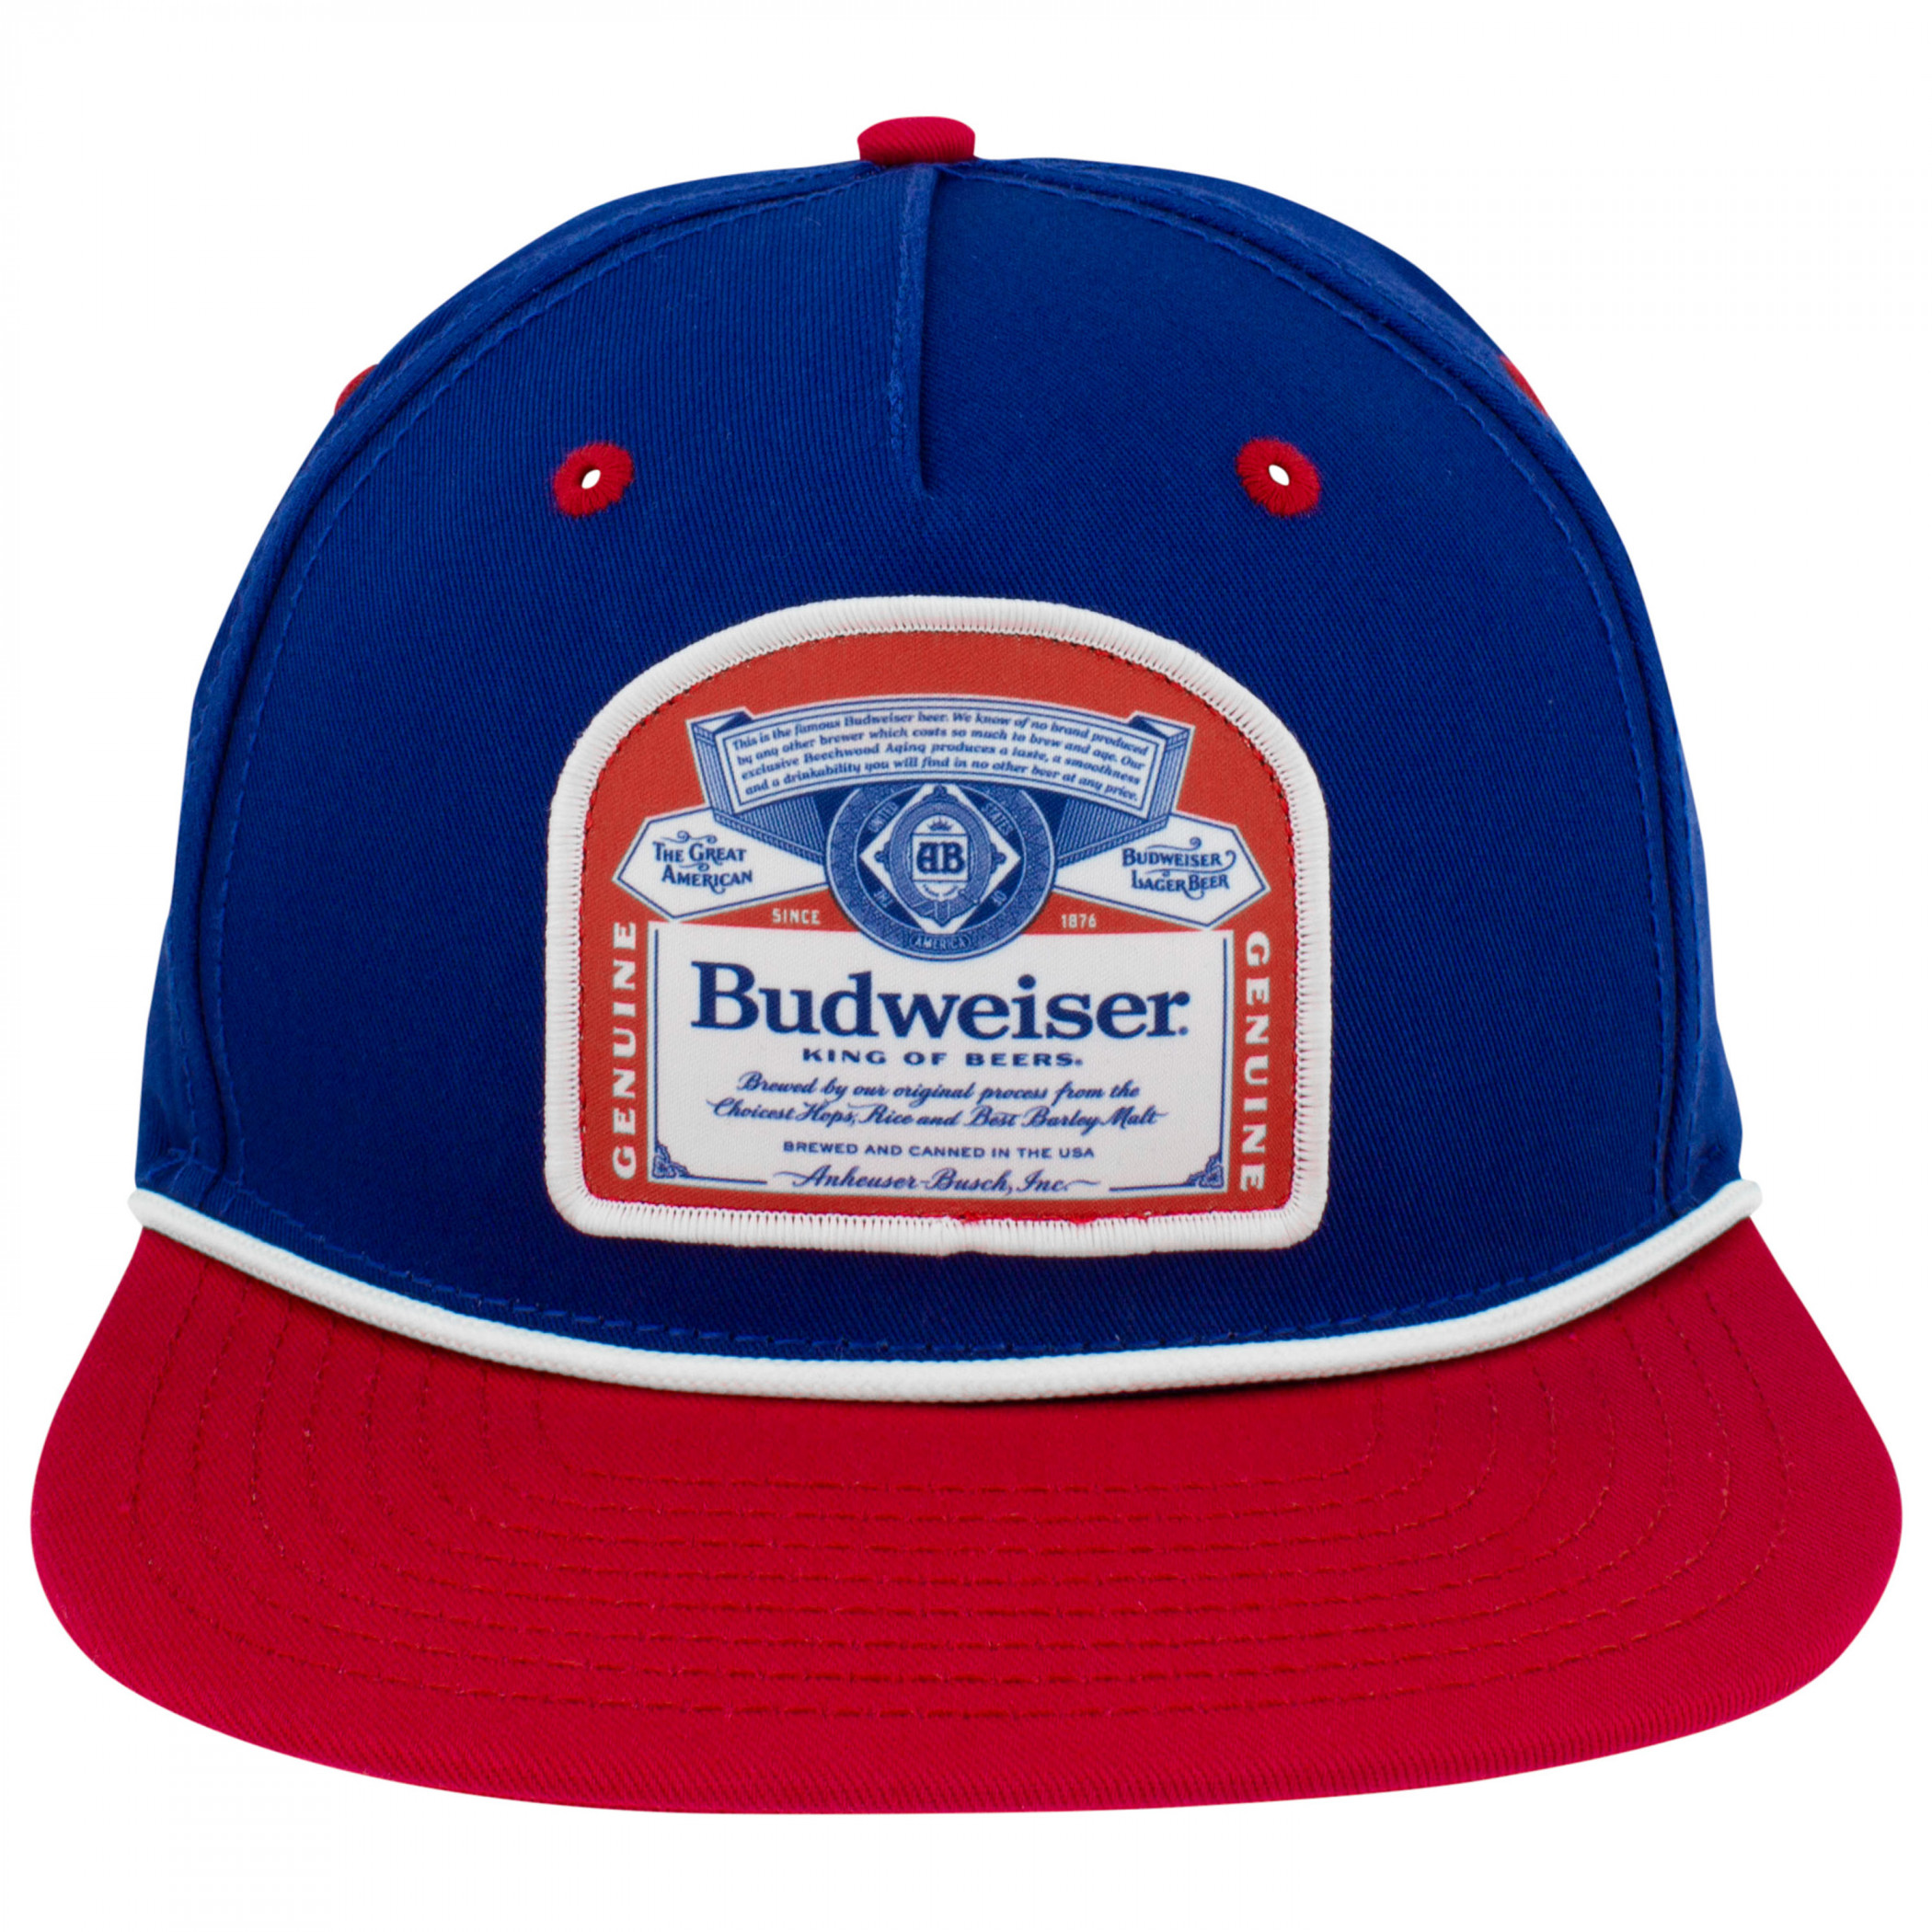 Budweiser Vintage Bottle Label Navy & Red Rope Hat